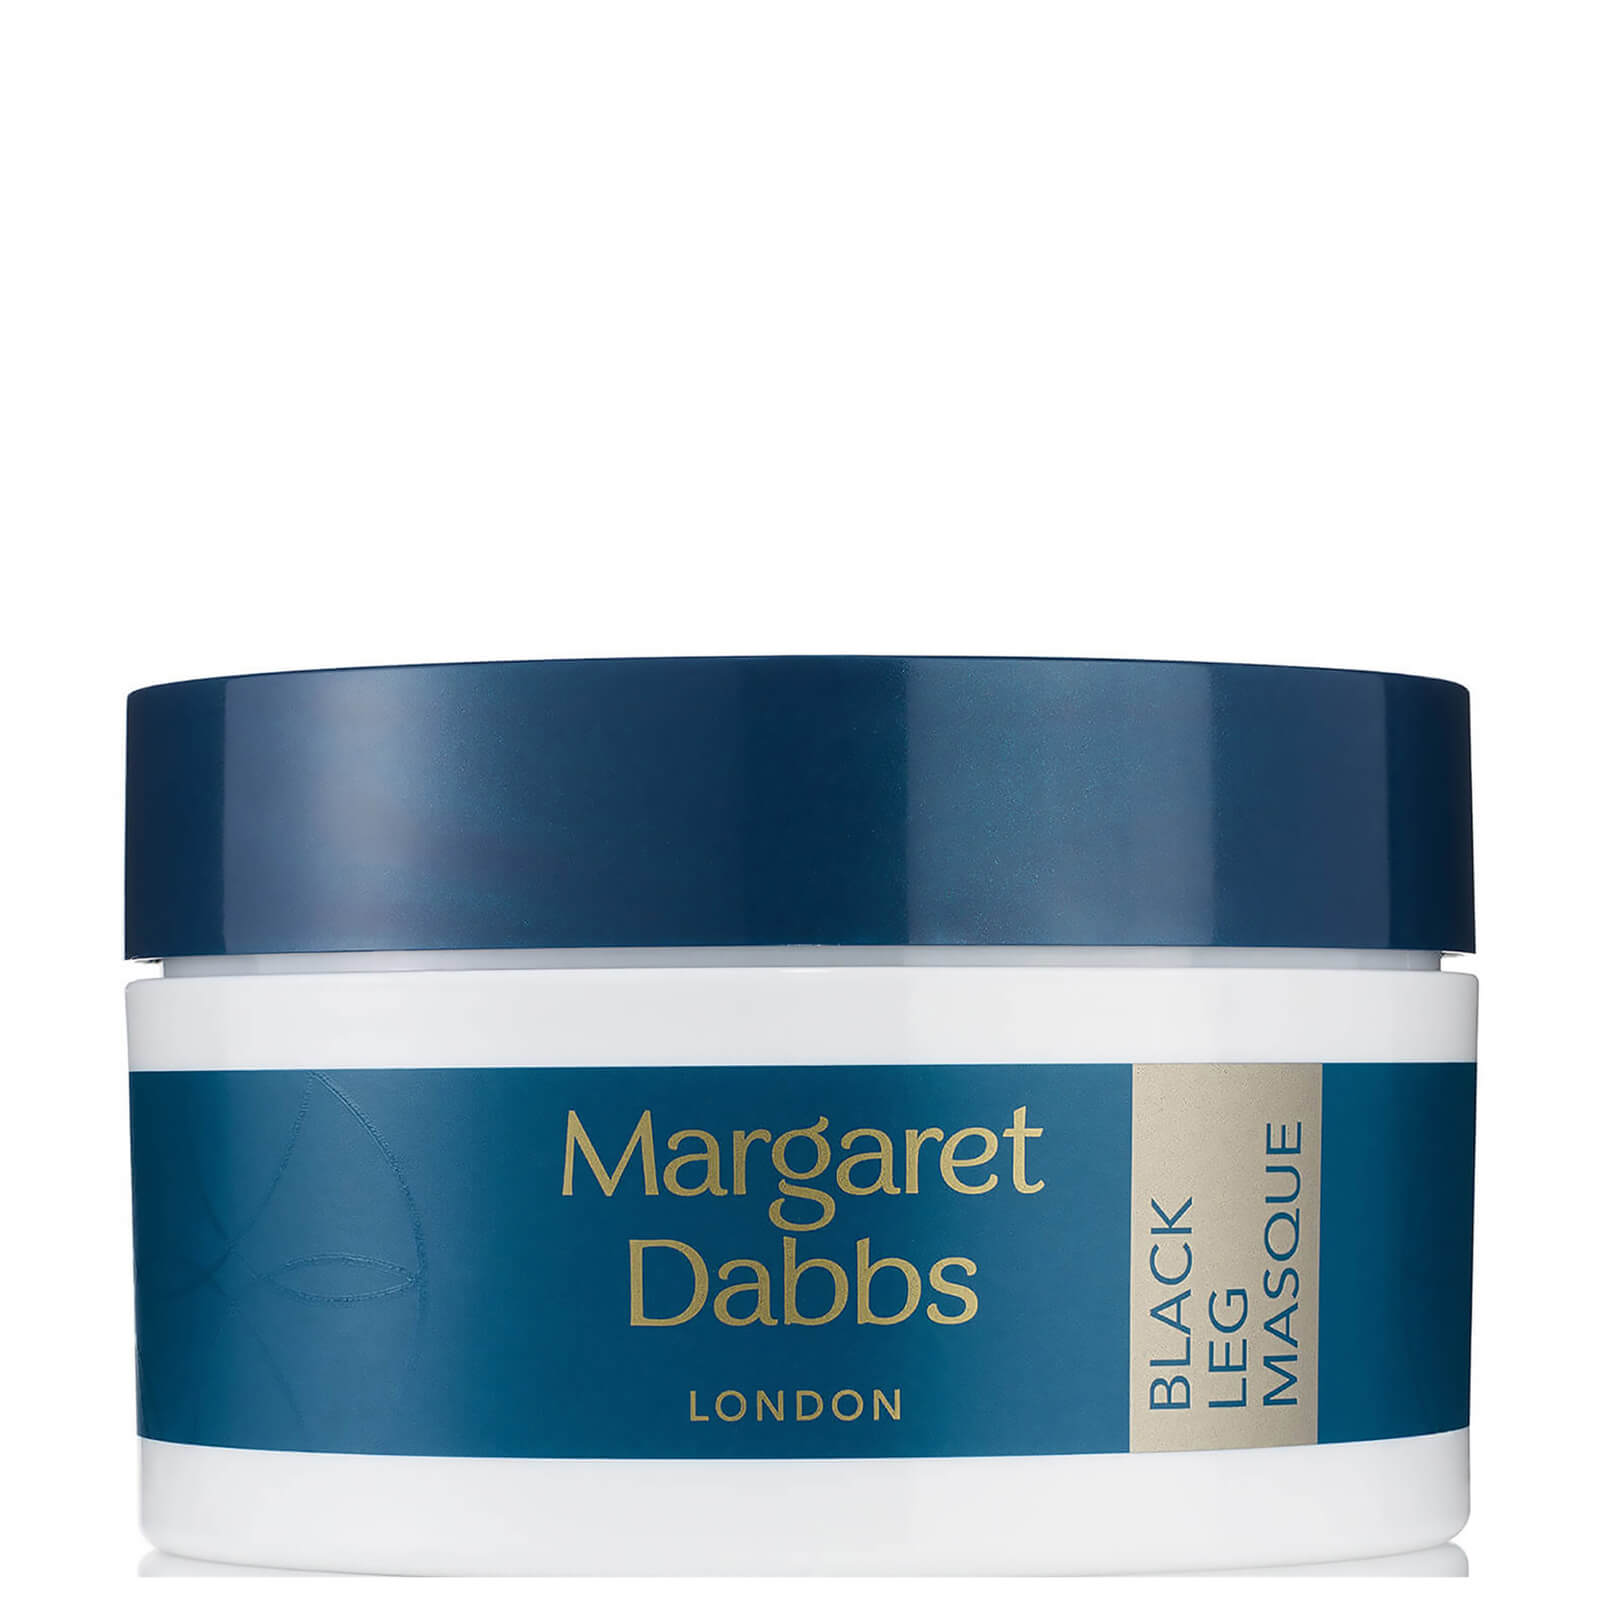 Margaret Dabbs London Black Leg Masque 200g von Margaret Dabbs London